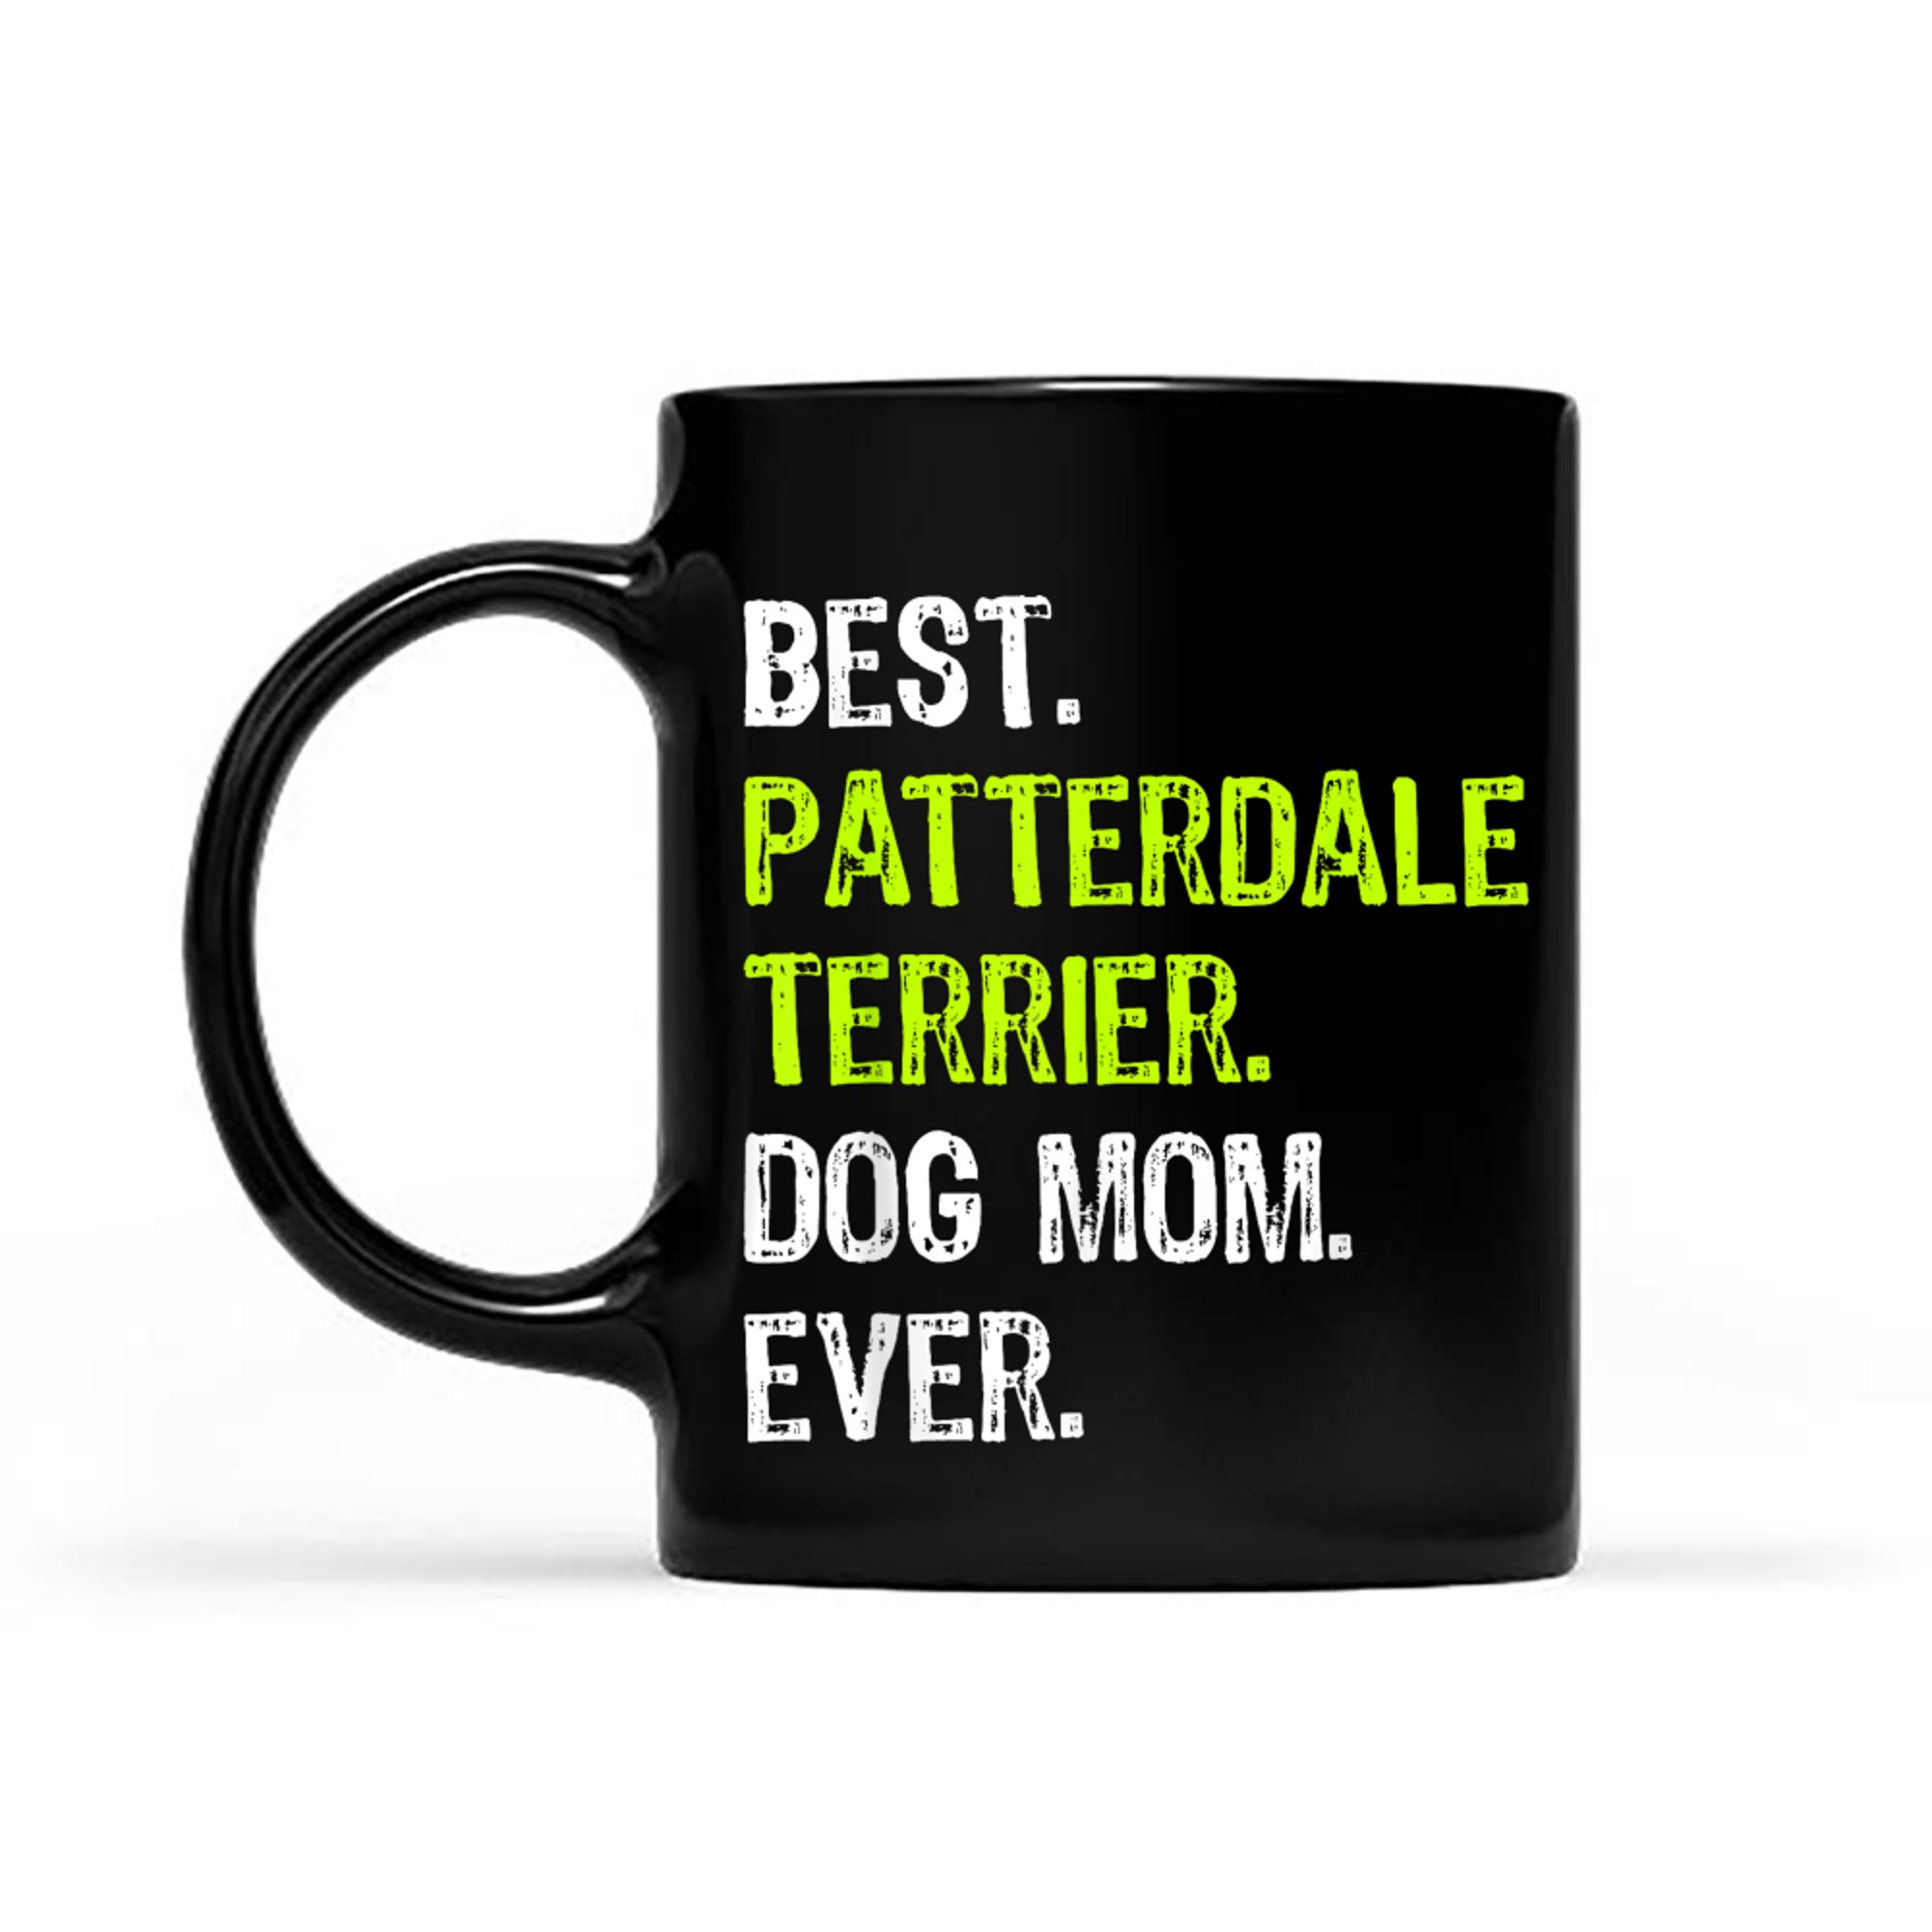 Best Patterdale Terrier Dog MOM Ever Dog Lovers mug black